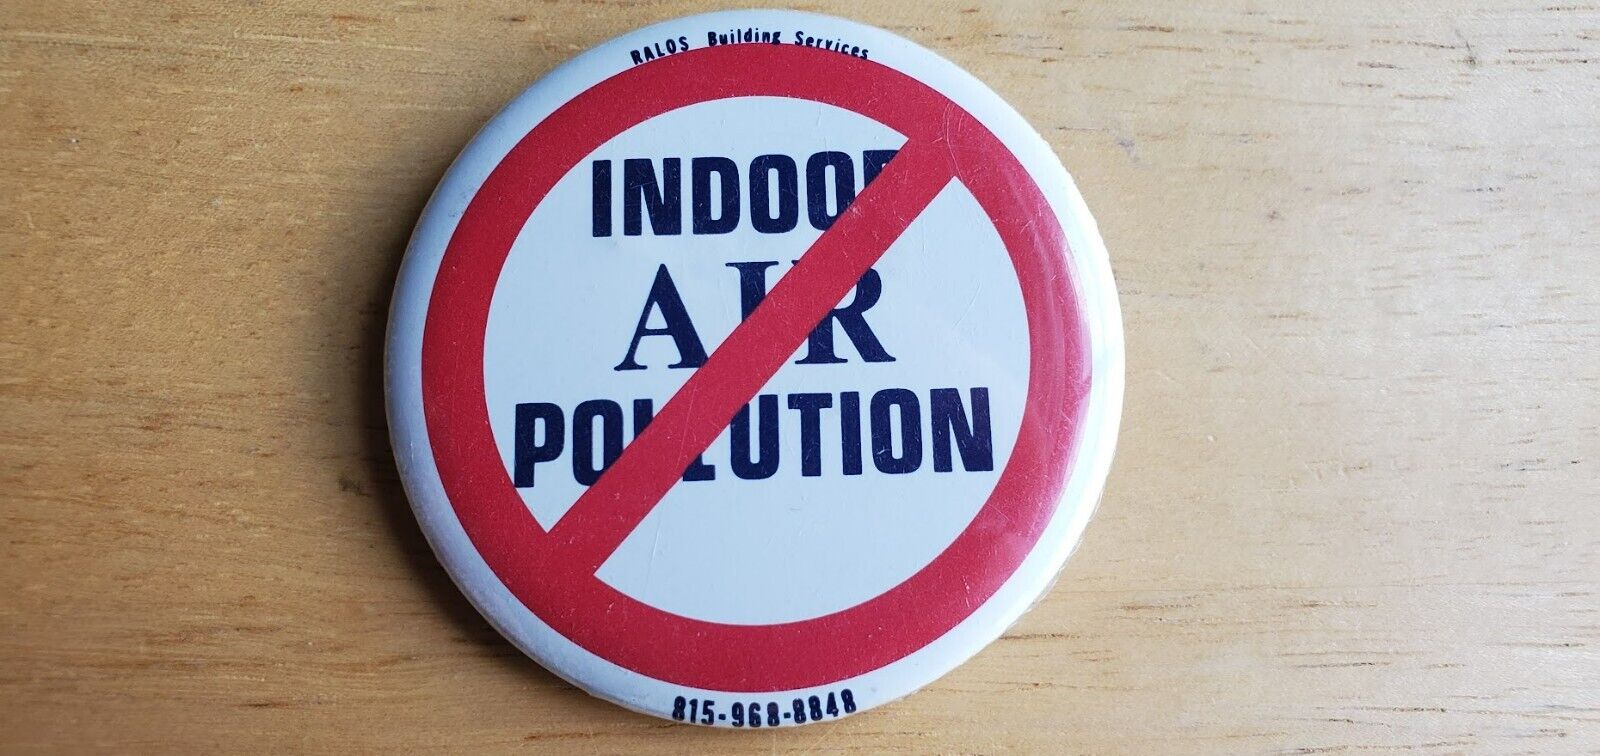 No Indoor Air Pollution Pin Ralos Building Services Red Circle w Slash Through